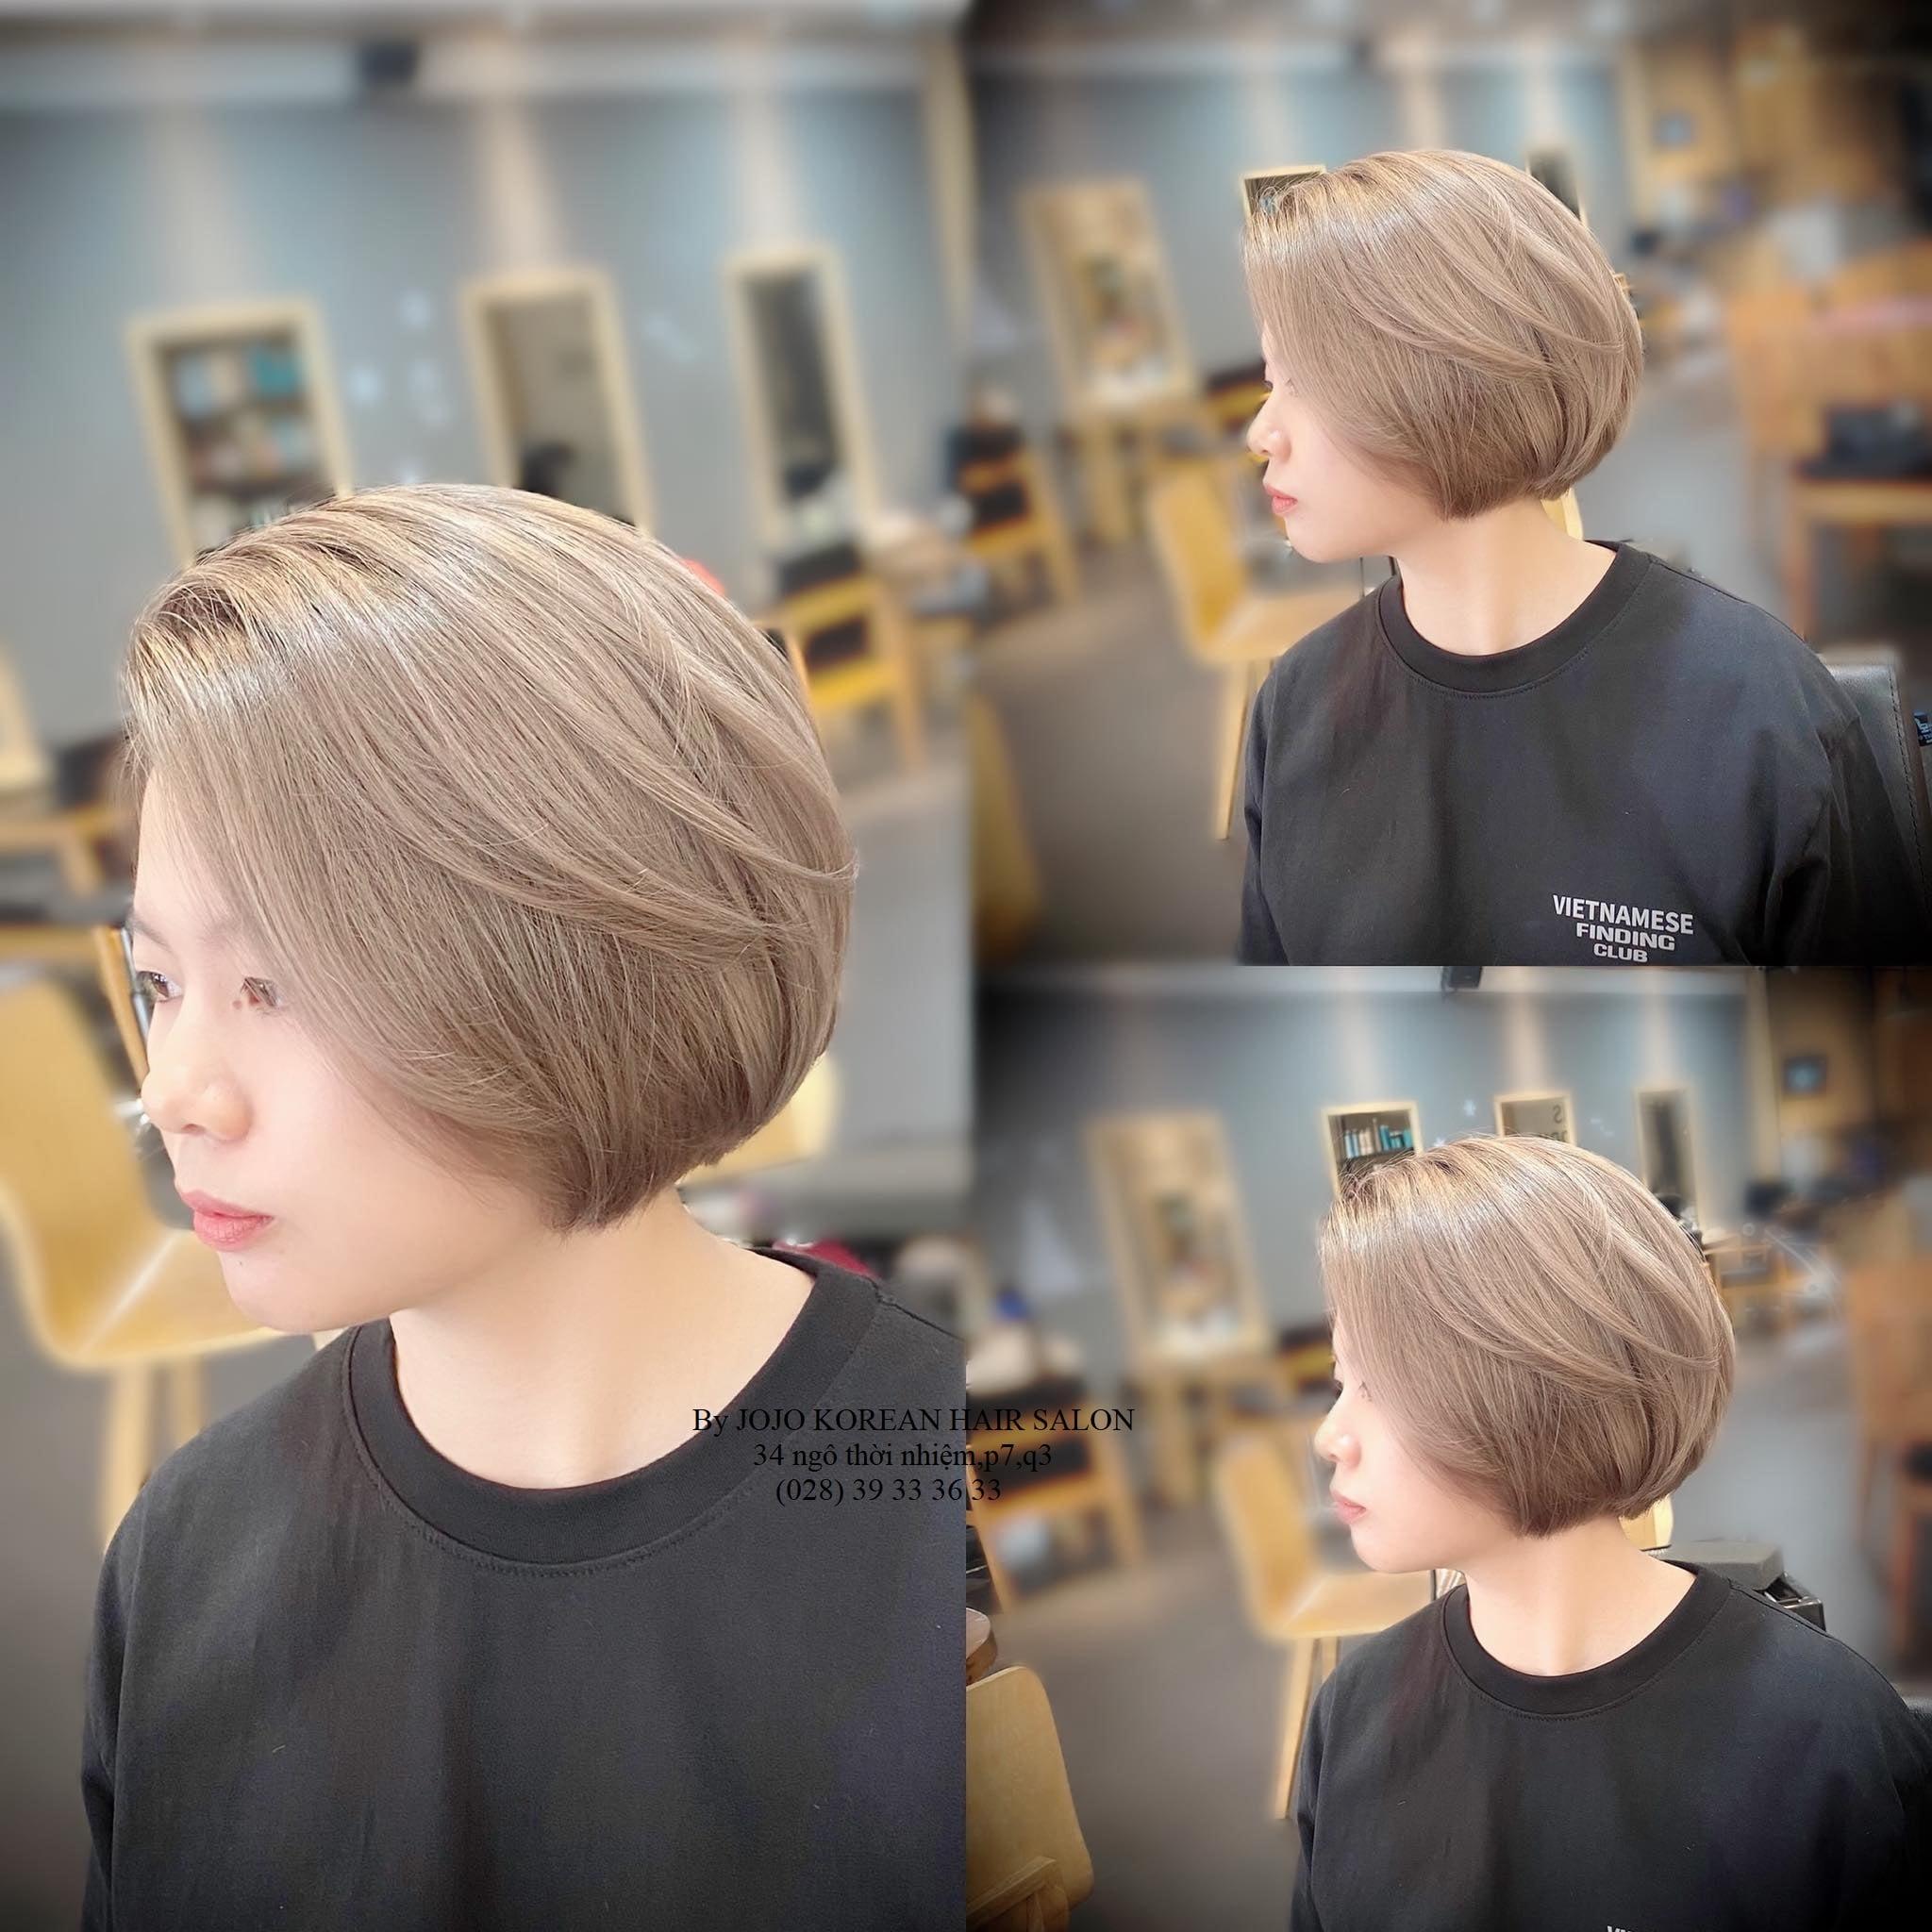 Mẫu tóc ngắn nâu trà sữa. Nguồn: Fanpage JoJo Korean Hair Salon